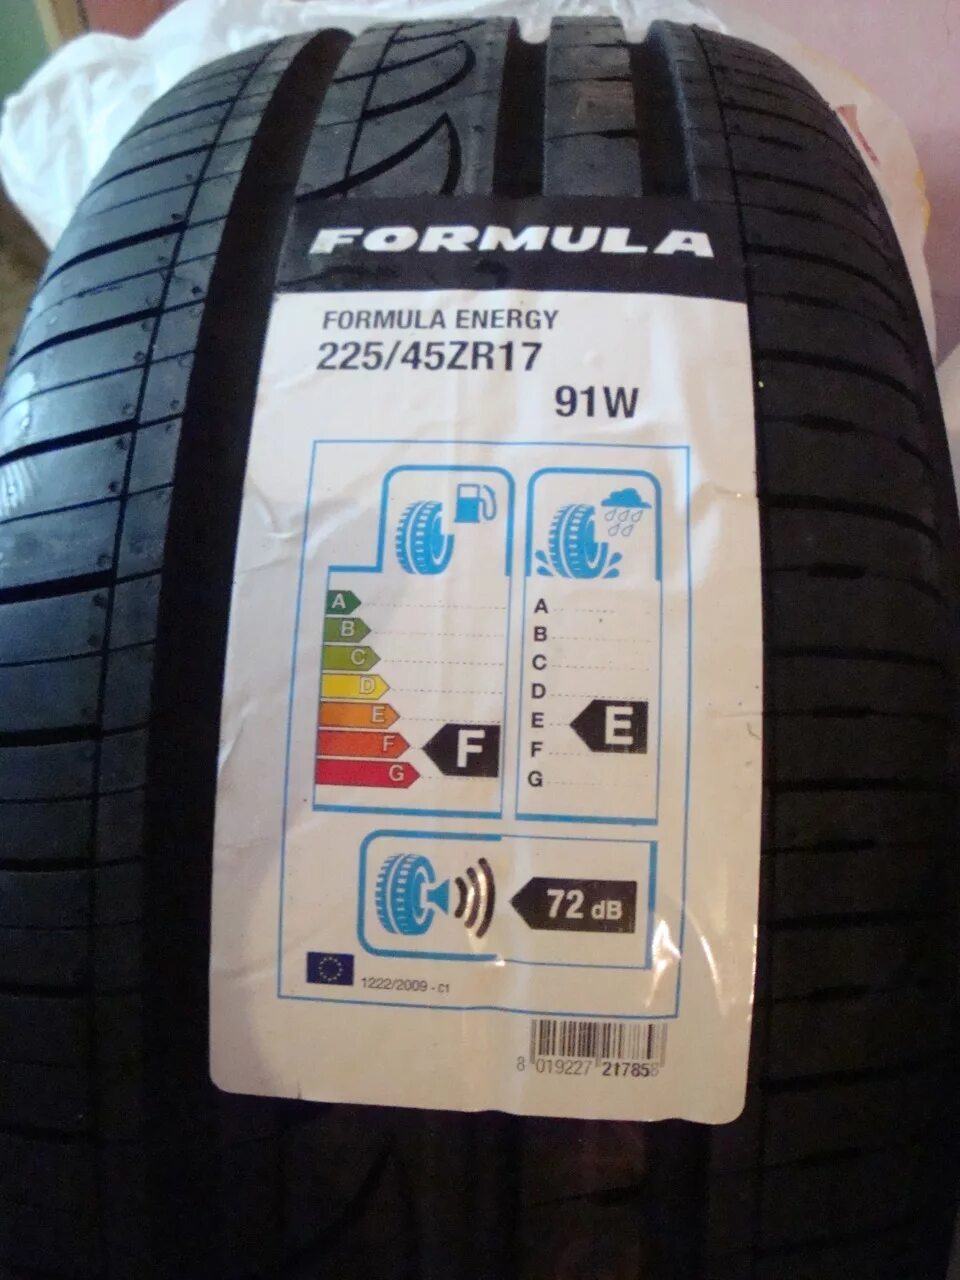 Formula Energy 225/45 r17. Formula 225/45r17 94y XL Energy. 225/45/17 Formula Energy. Pirelli Formula Energy 225/45 r17 94y XL. Pirelli formula производитель